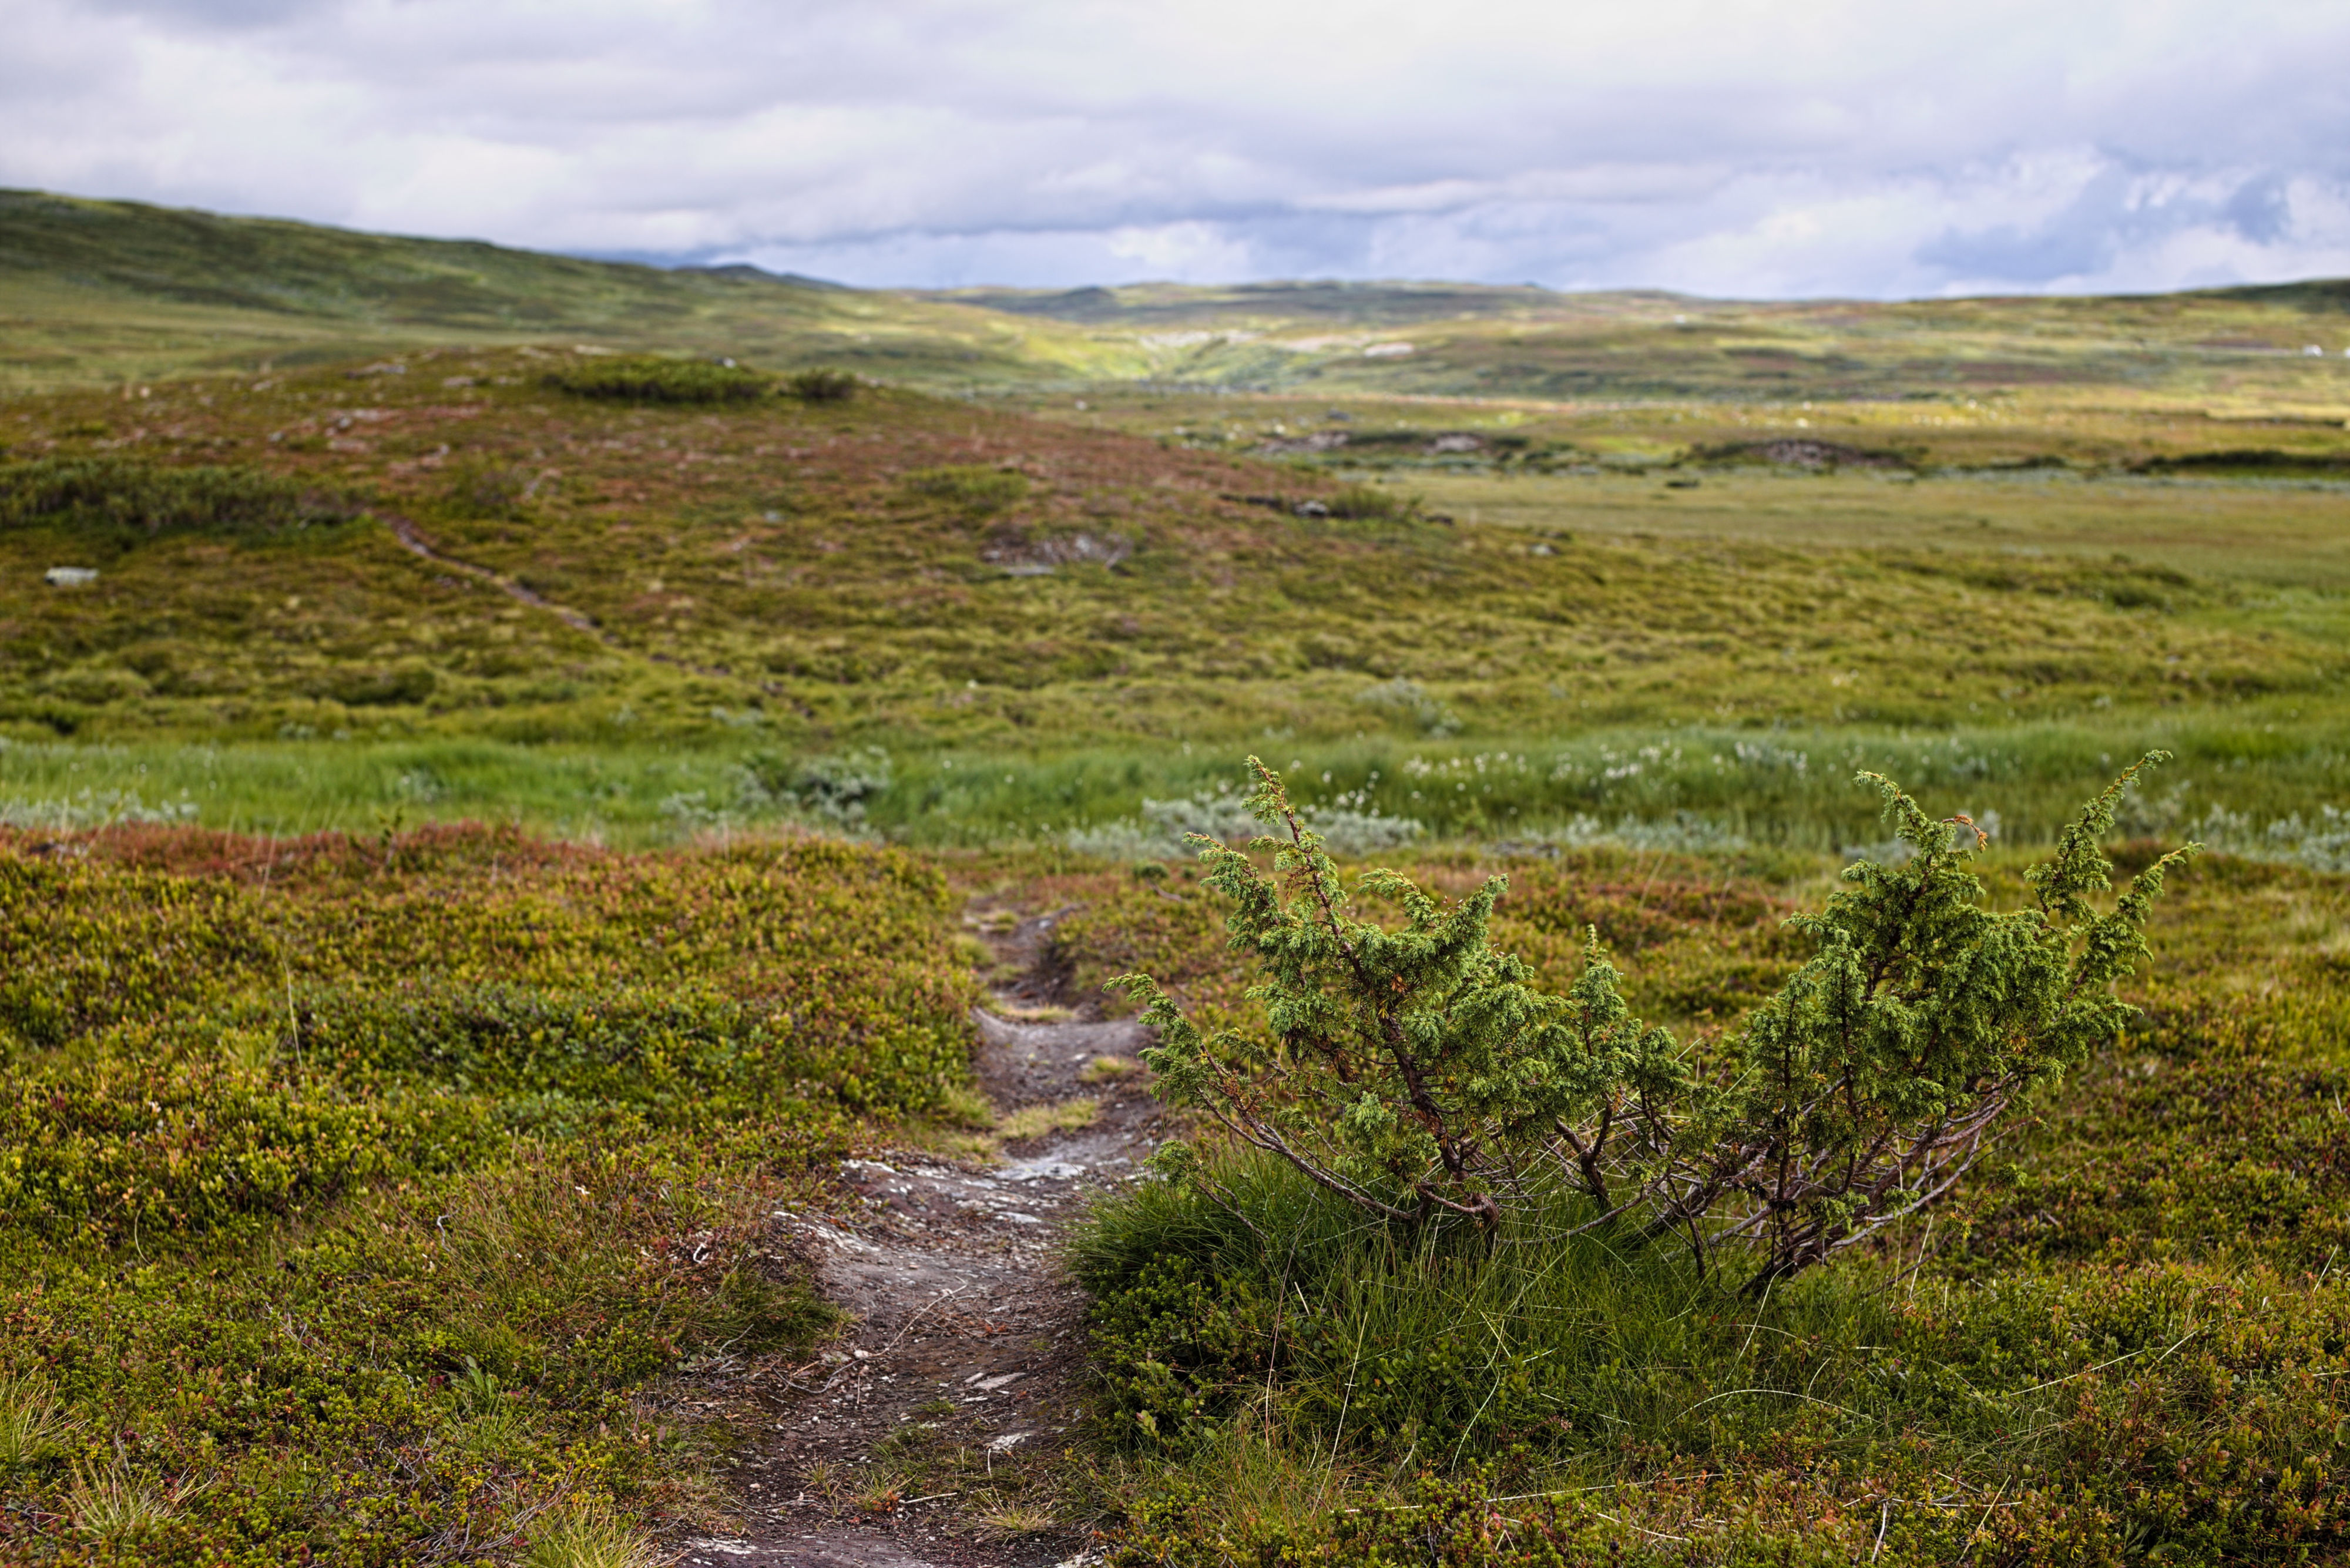 Nära berget Raavre i Skåarnja naturresarvat 20190818, Bredvid en liten enbuske går en stig genom landskapet..